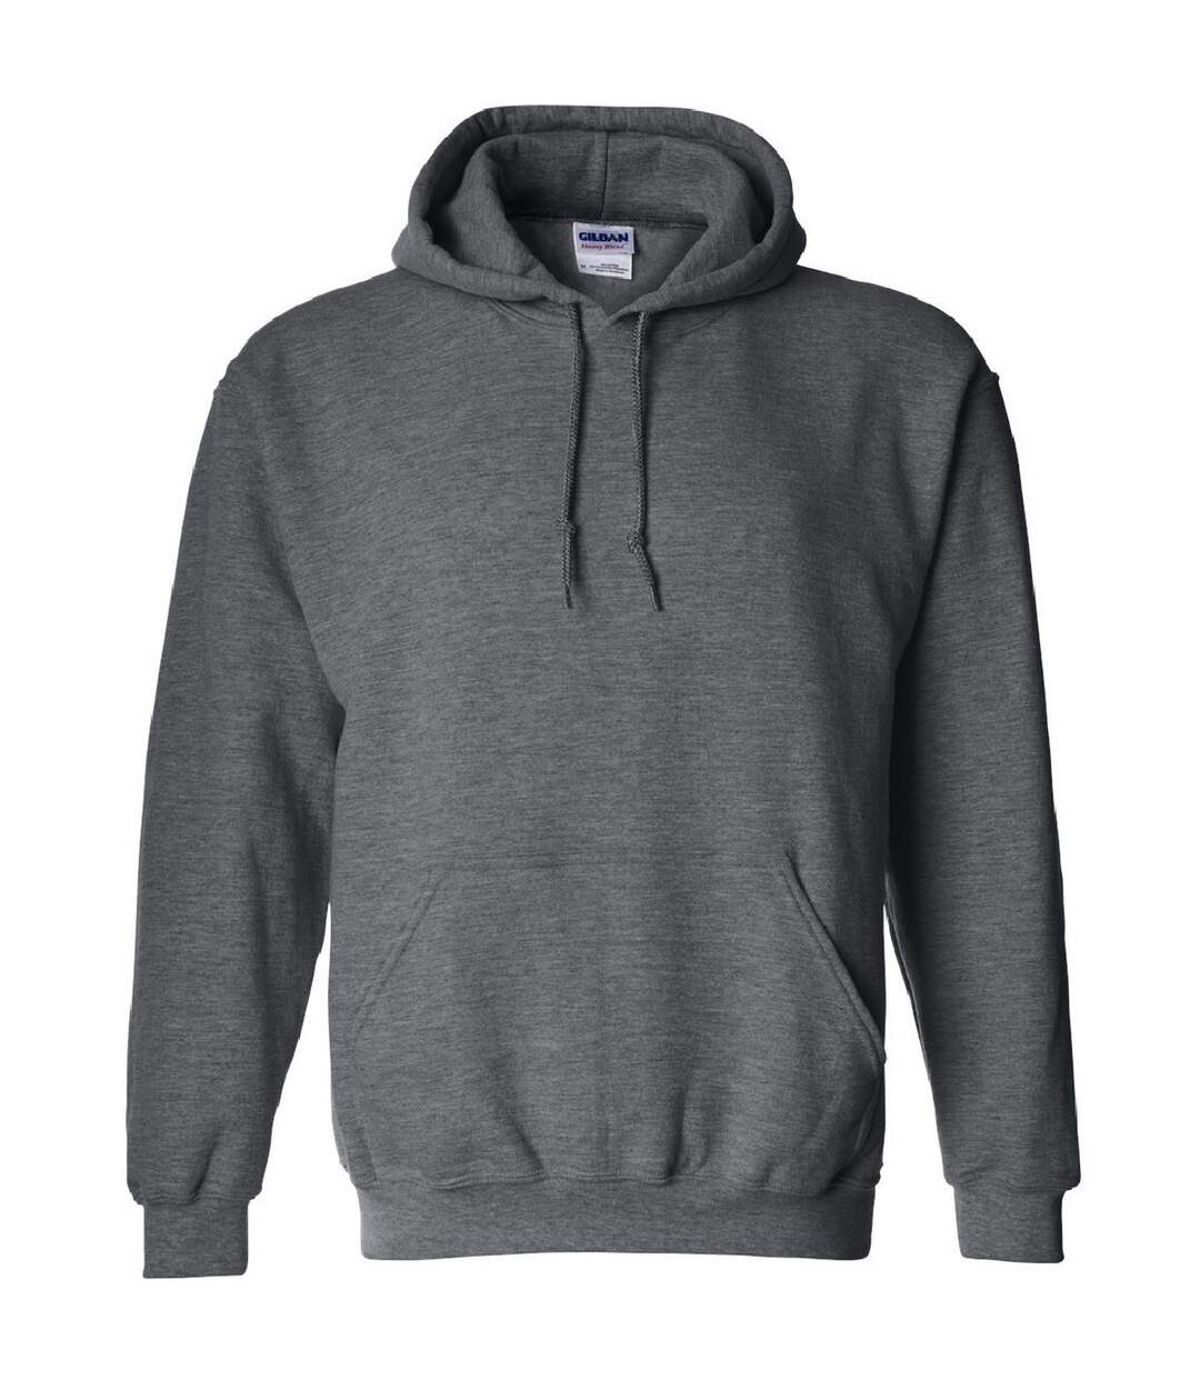 Gildan - Sweatshirt à capuche - Unisexe (Gris foncé chiné) - UTBC468